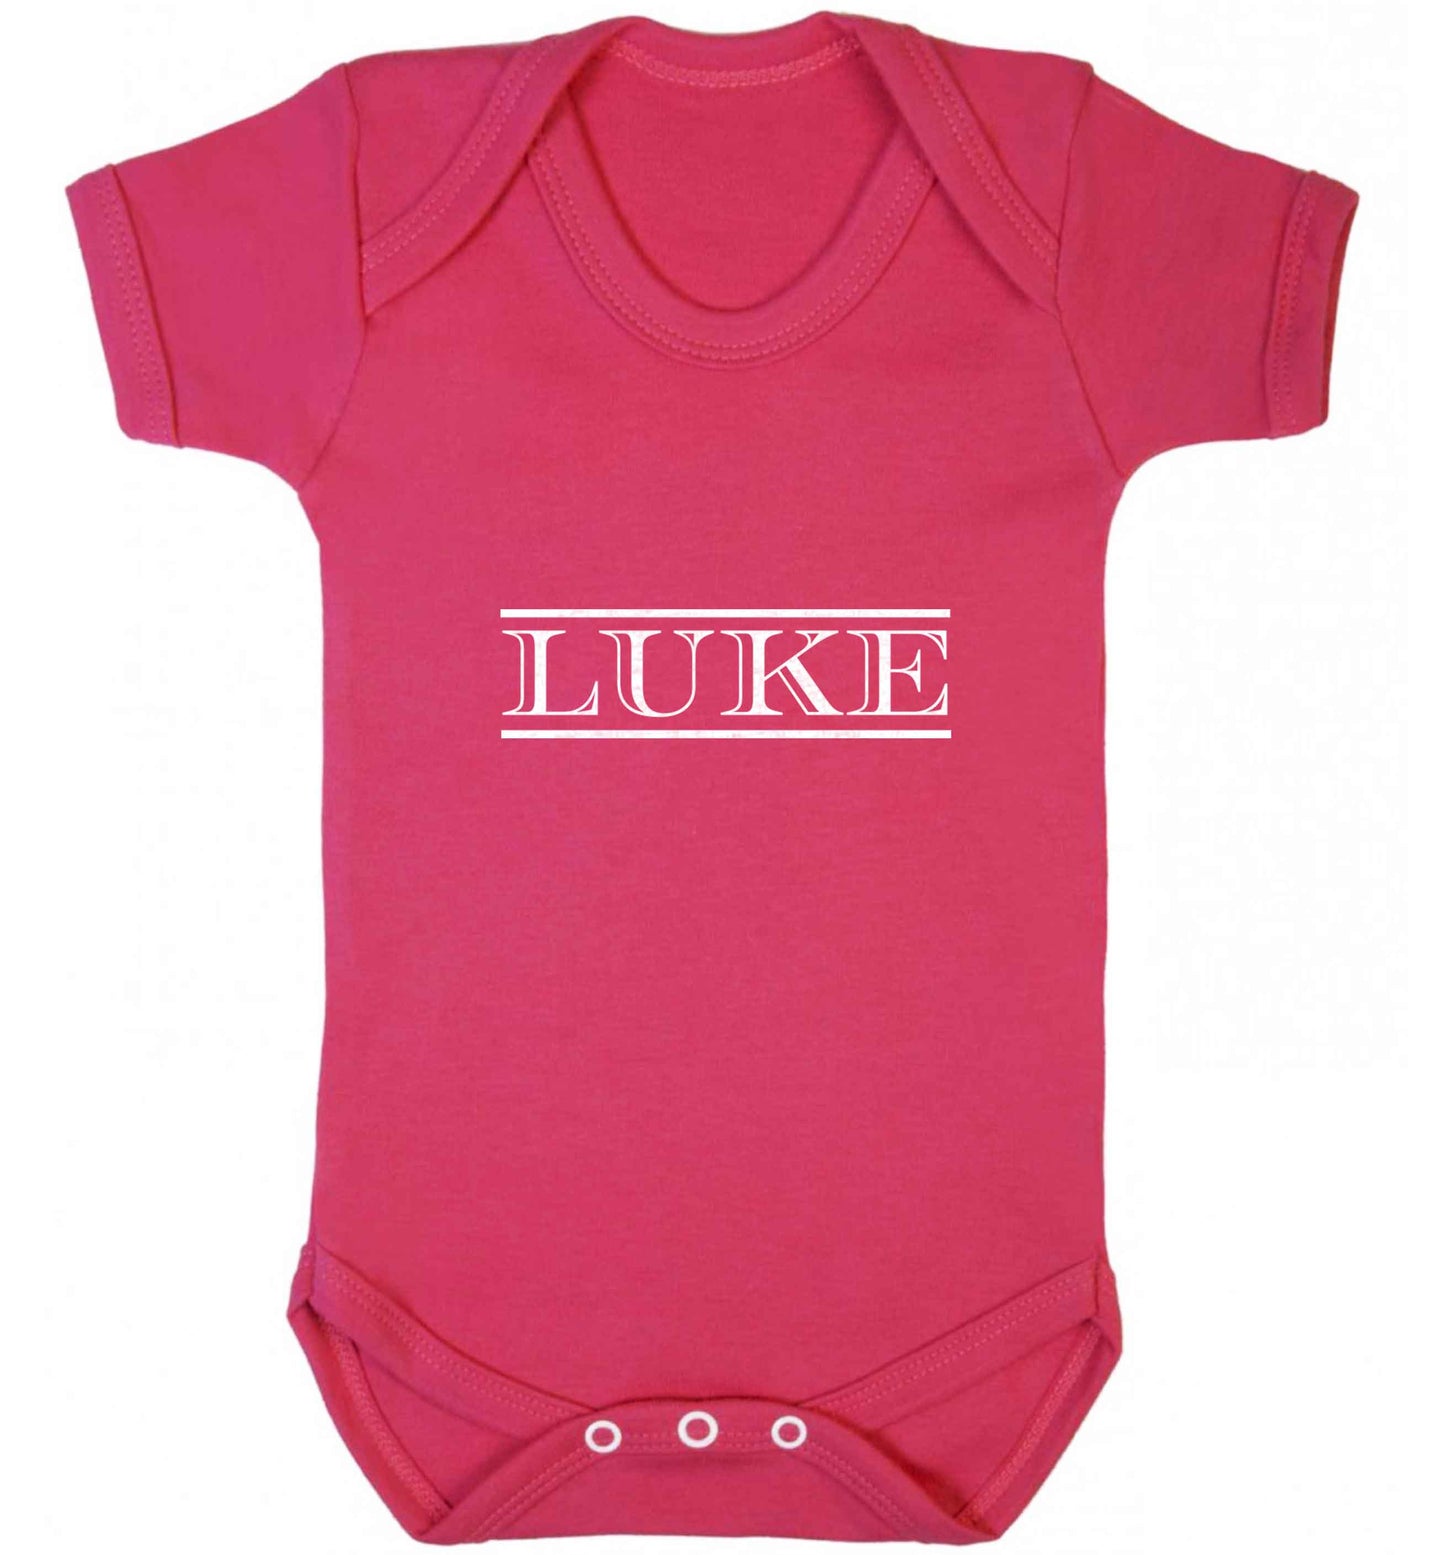 Personalised name baby vest dark pink 18-24 months